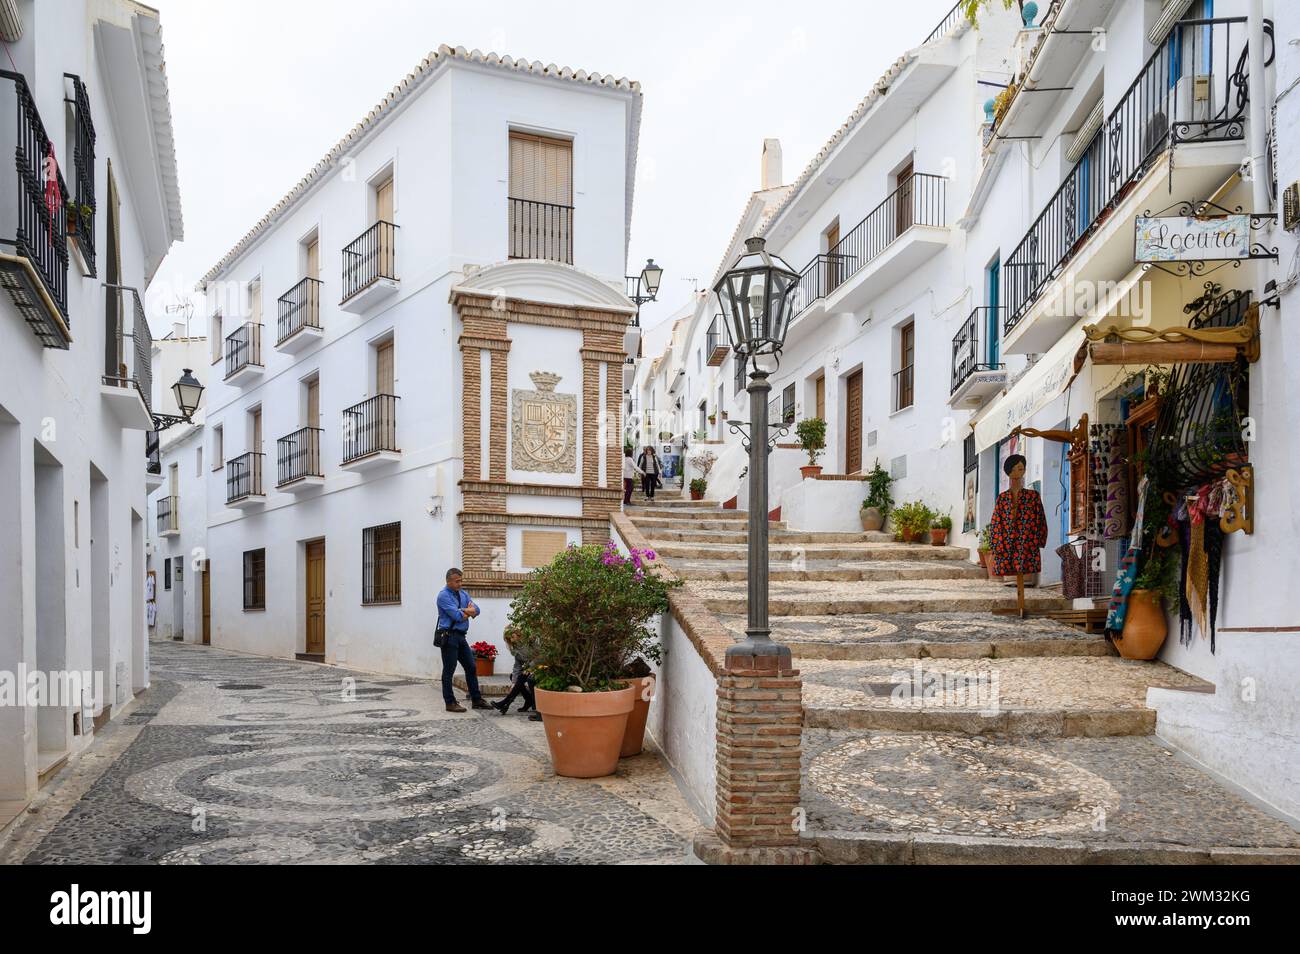 Rues en descente et en montée raides dans l'un des plus beaux villages d'Espagne, Frigiliana, Malaga, Espagne. Banque D'Images